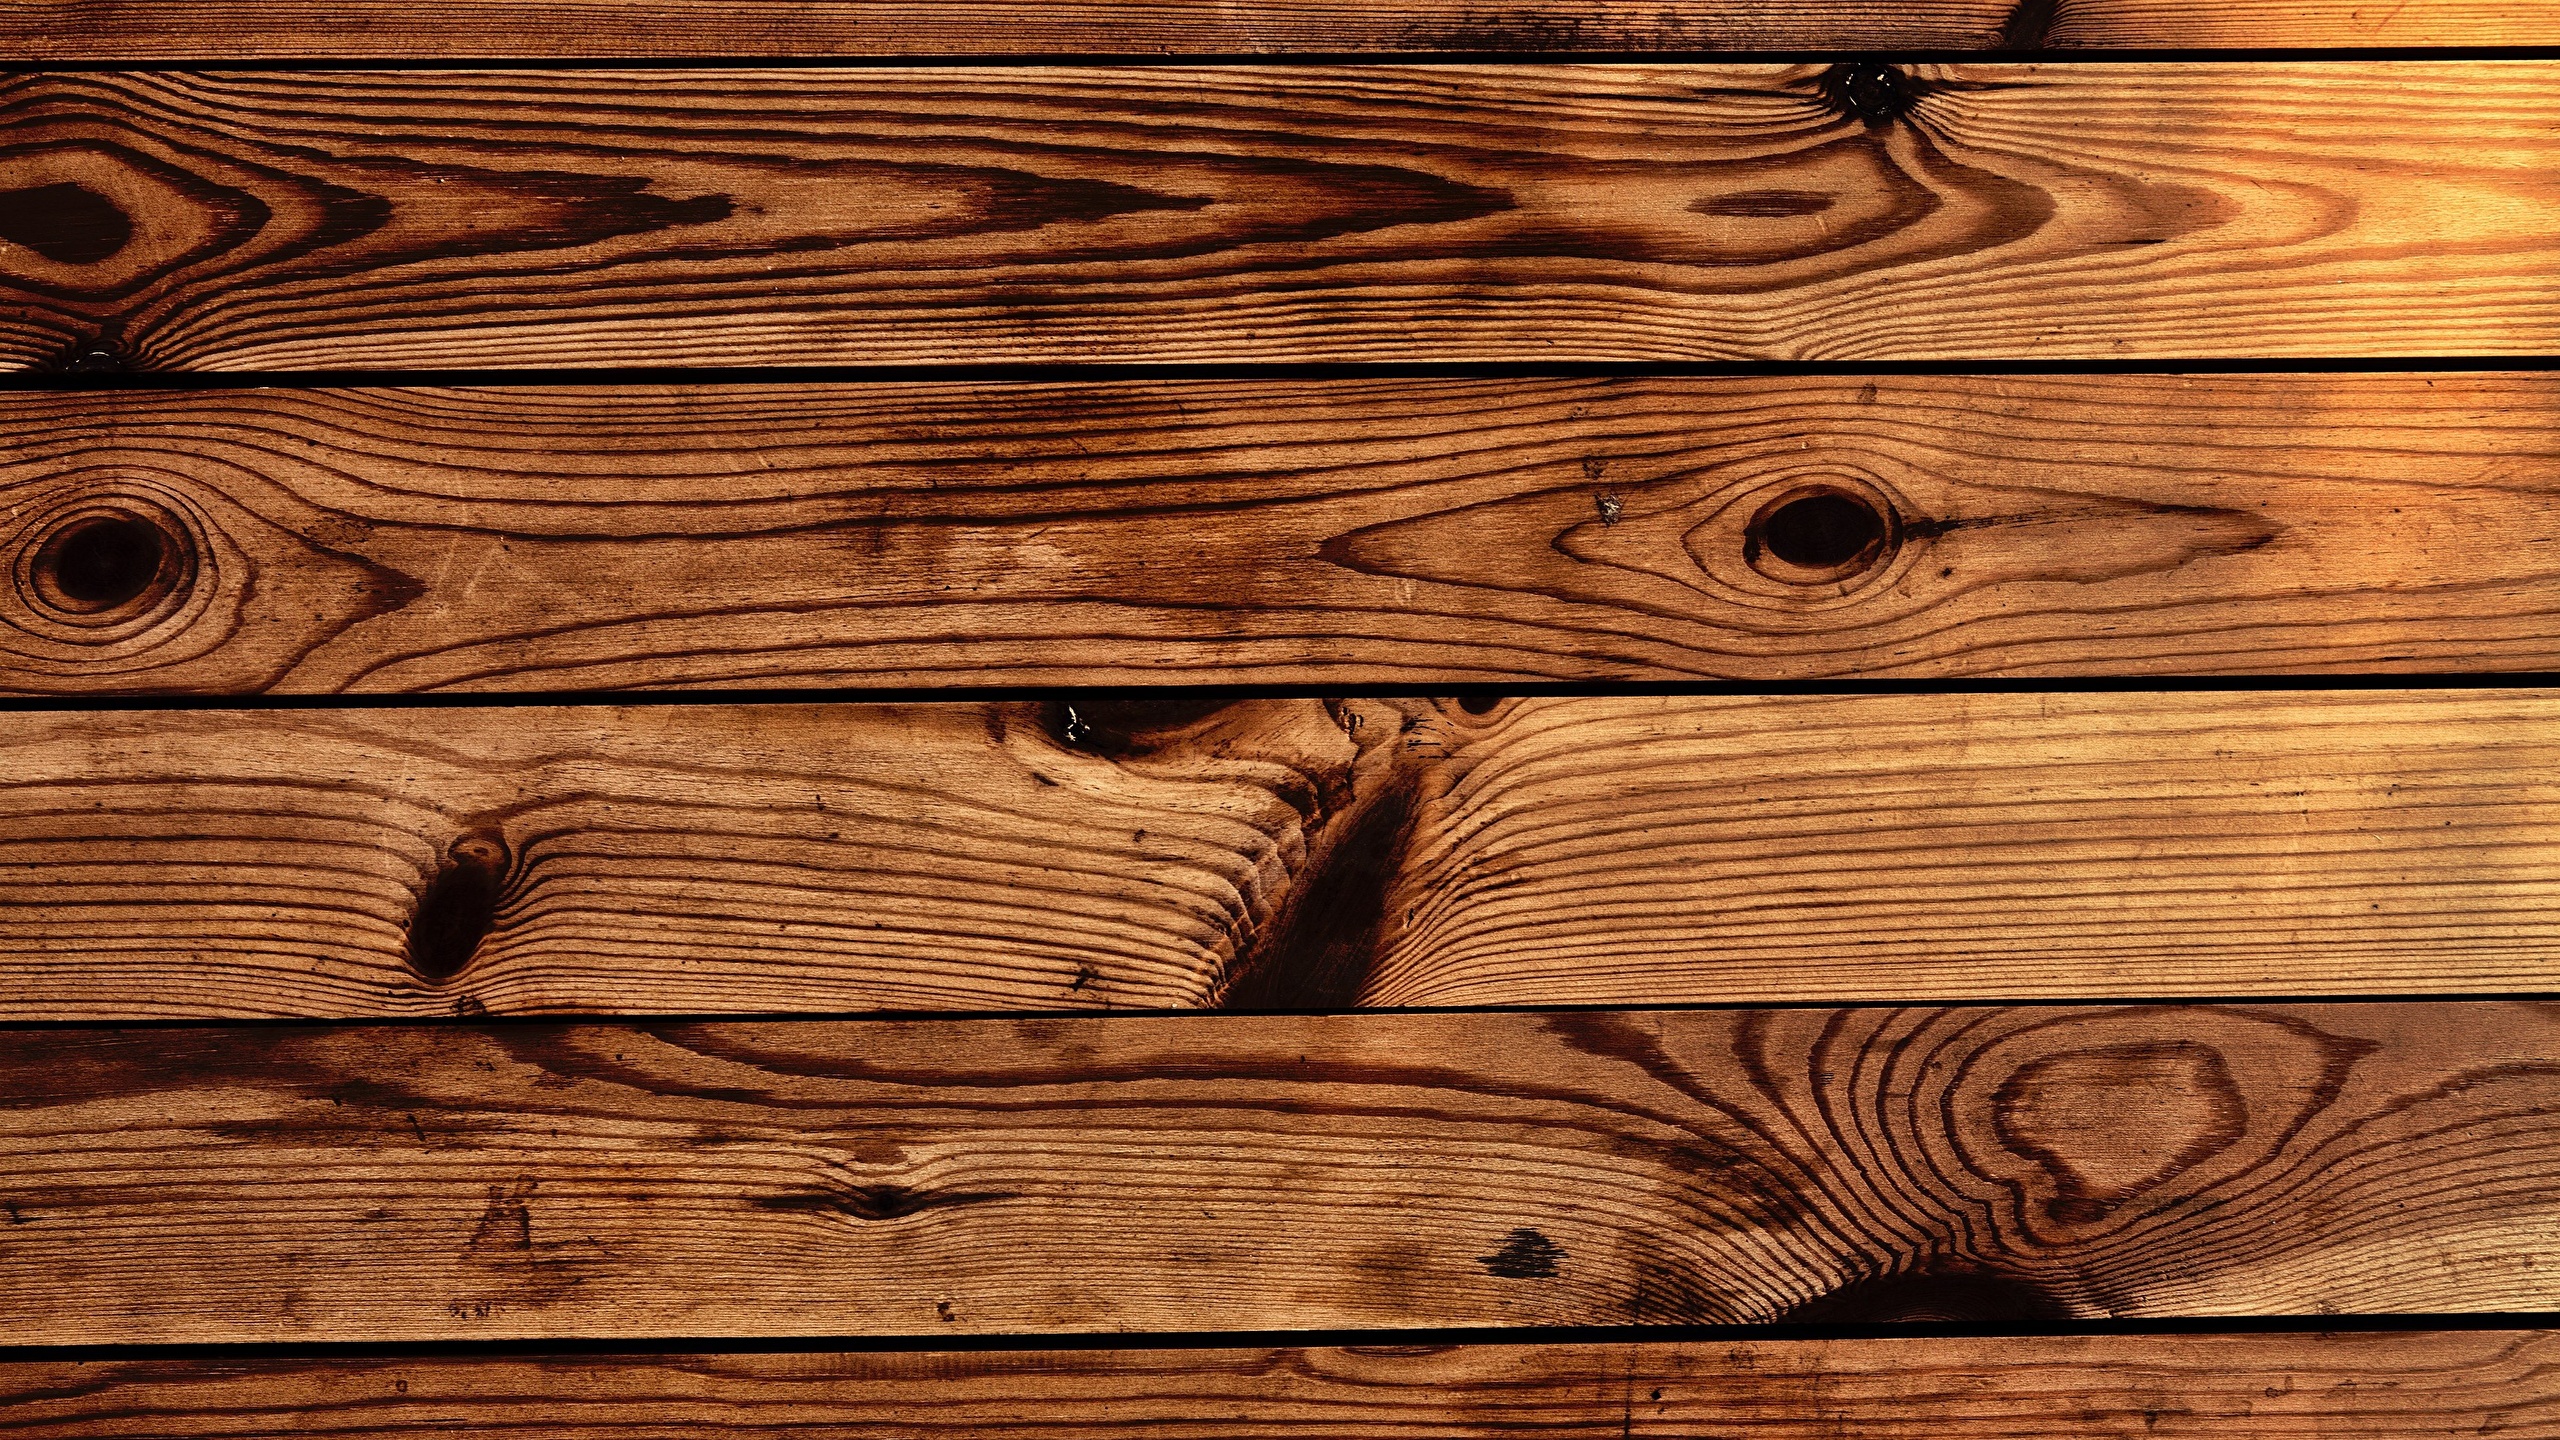 Texture của loại gỗ đó chính là điểm nhấn tạo nên sự đẹp mắt cho tầm nhìn mọi người. Dù đó là vân gỗ, bề mặt thô hay nhẵn, cứng hay mềm, Texture là yếu tố vô cùng quan trọng để phân biệt các loại gỗ. Hãy cùng xem những hình ảnh nổi bật liên quan đến Texture để tận hưởng cảm giác đẹp mắt này.